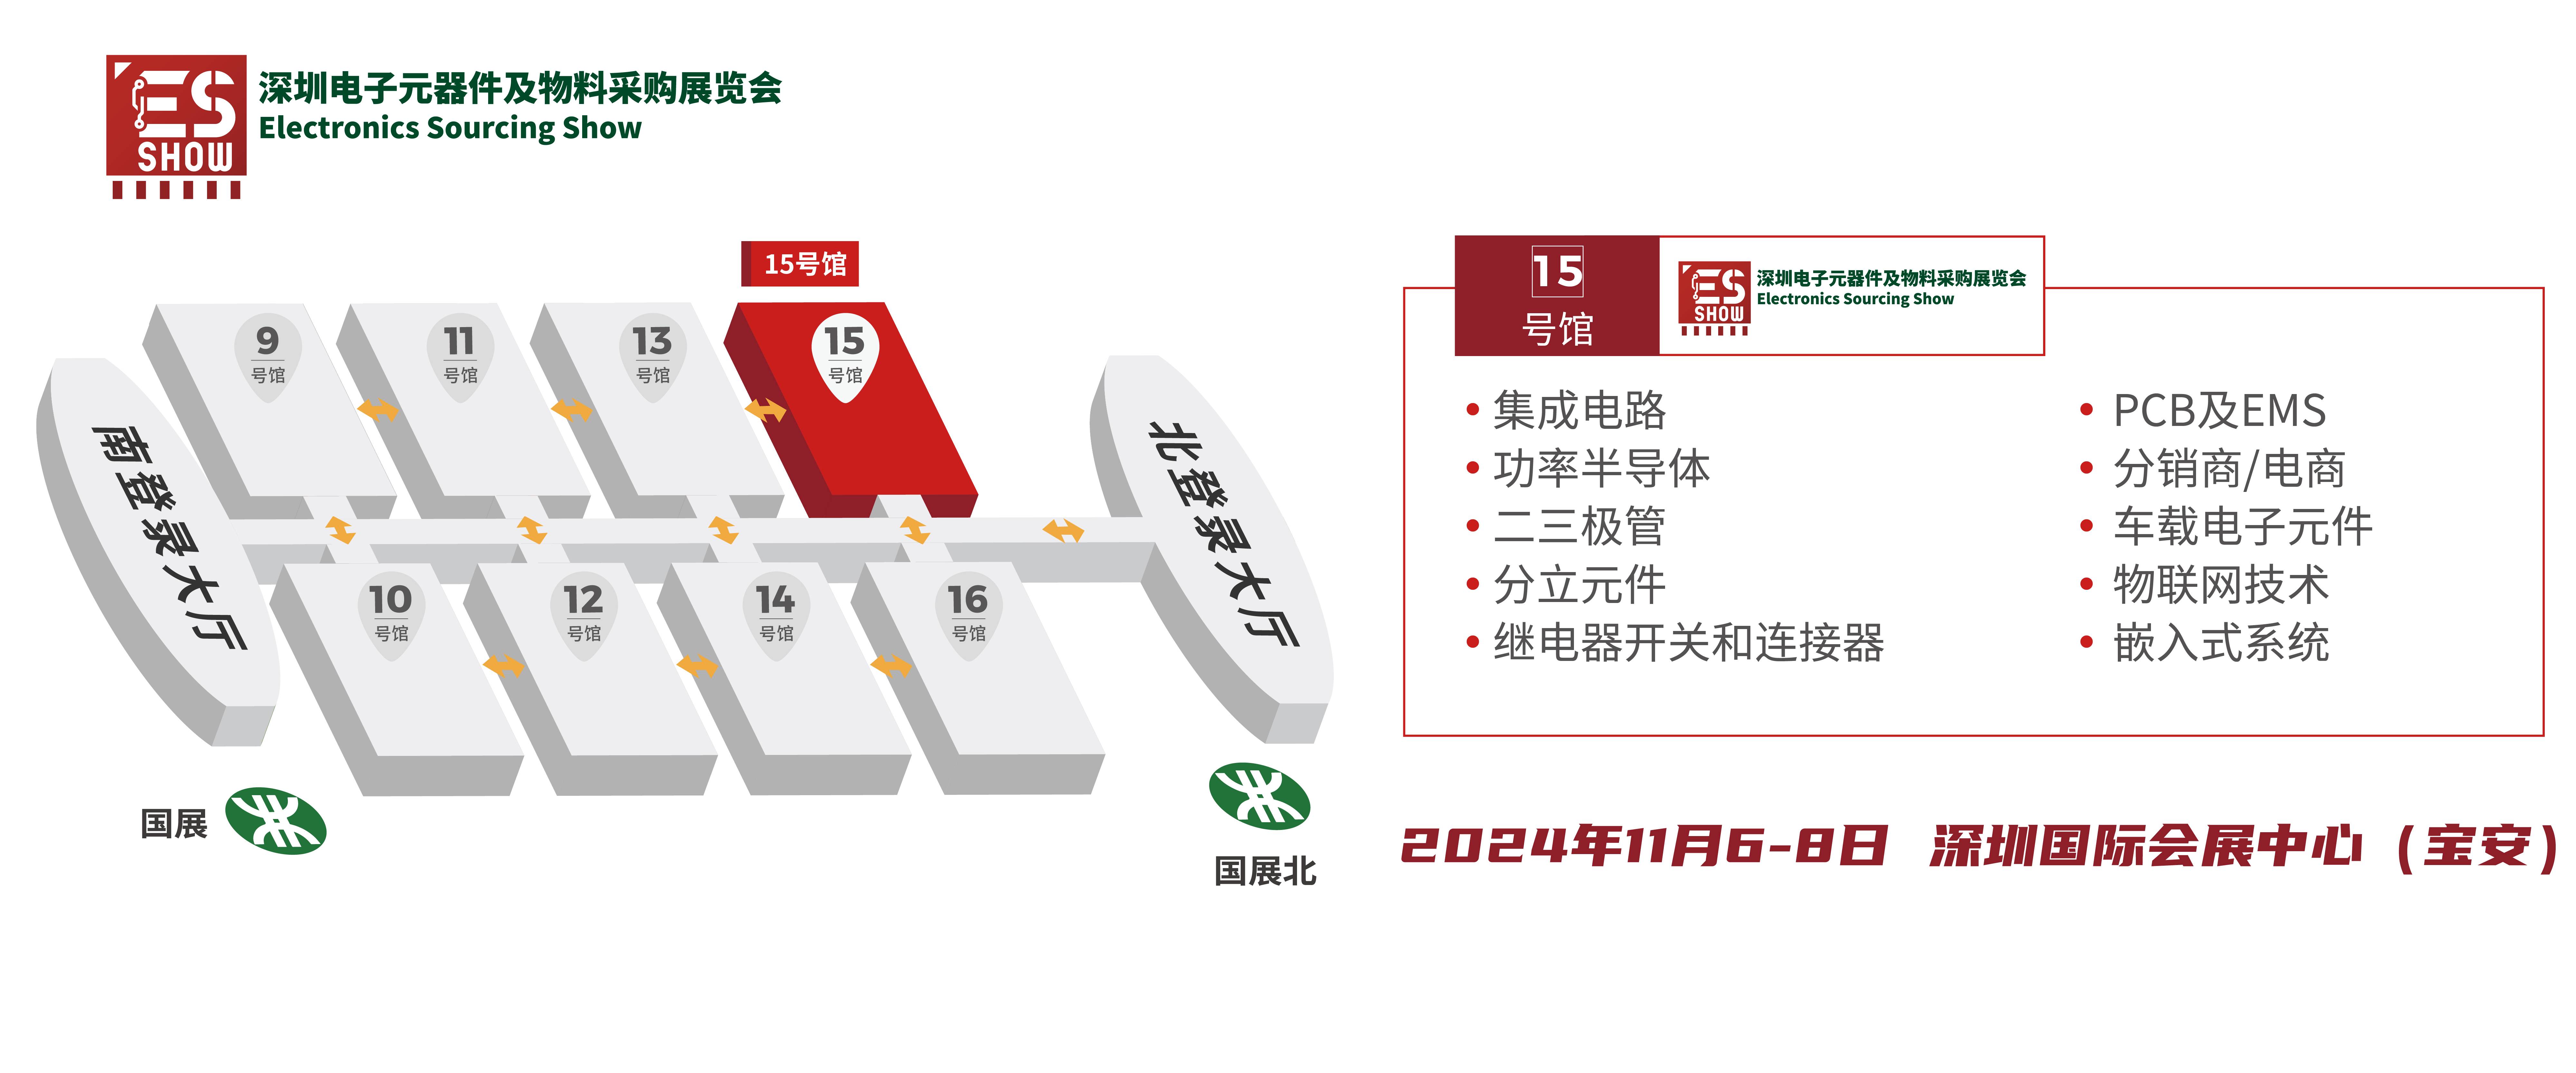 逆变器 SiC 深圳电子展 华南电子展 中国电子展 元器件展会